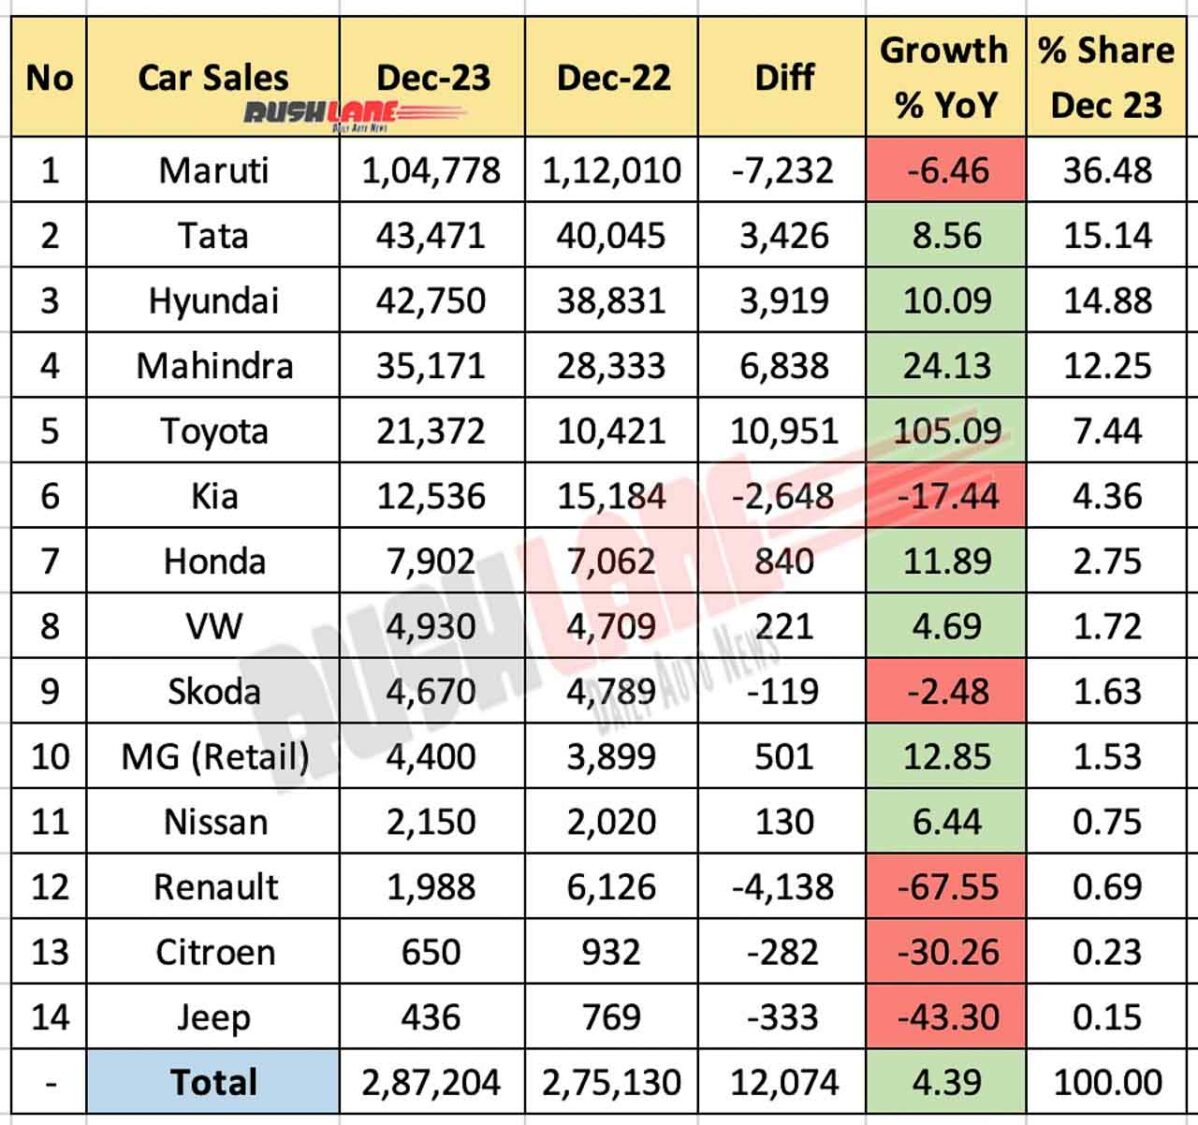 Car Sales Dec 2023 vs Dec 2022 - YoY comparison